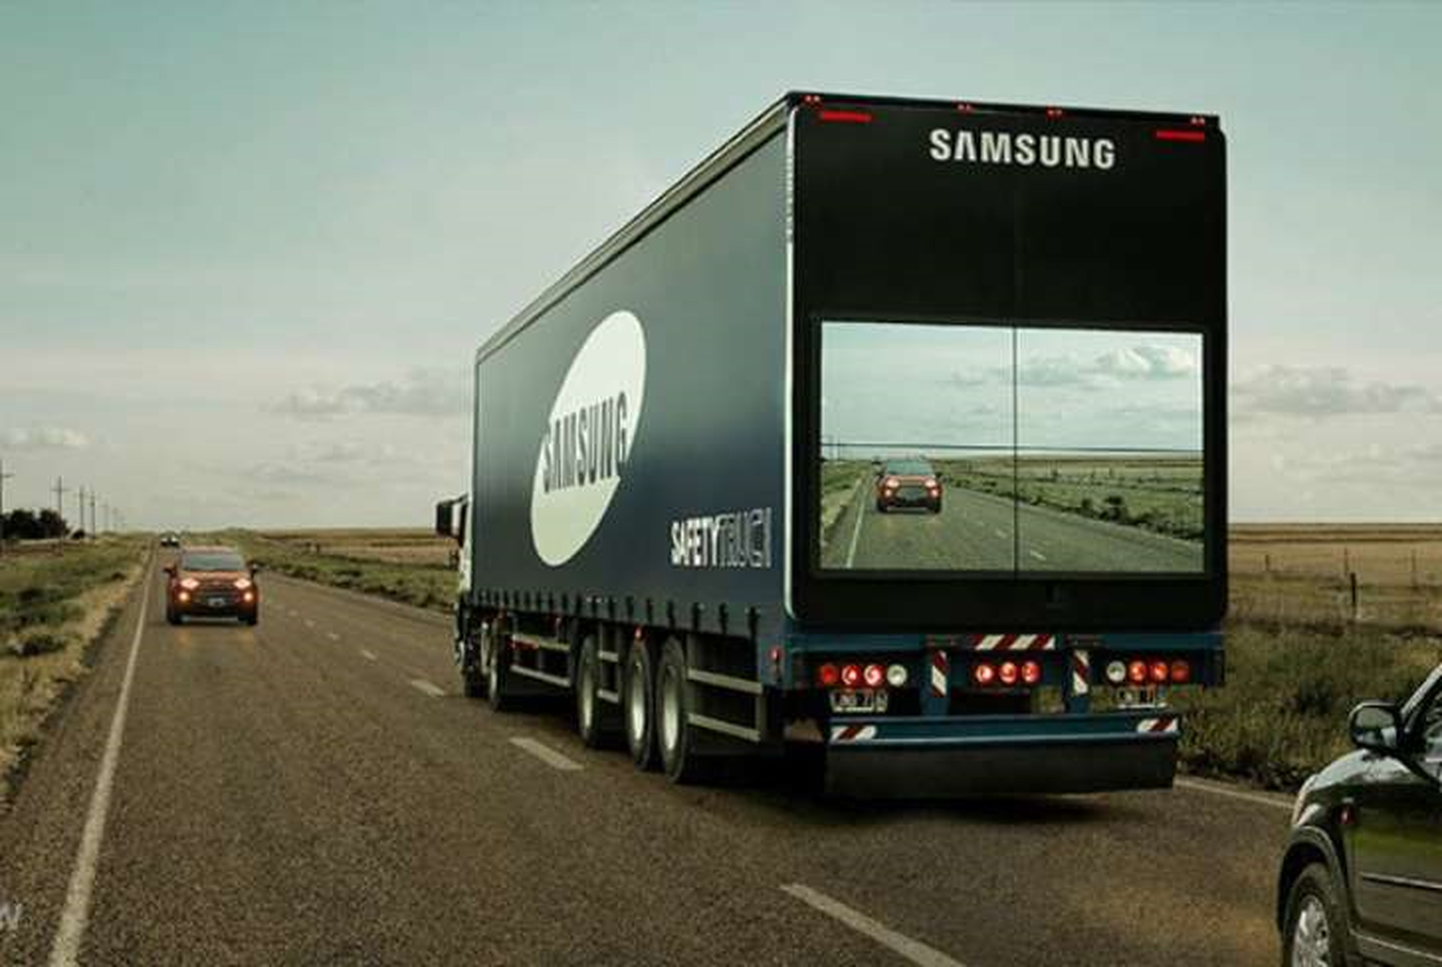 Samsungi tehnoloogia näitab veokitel maanteel toimuvat